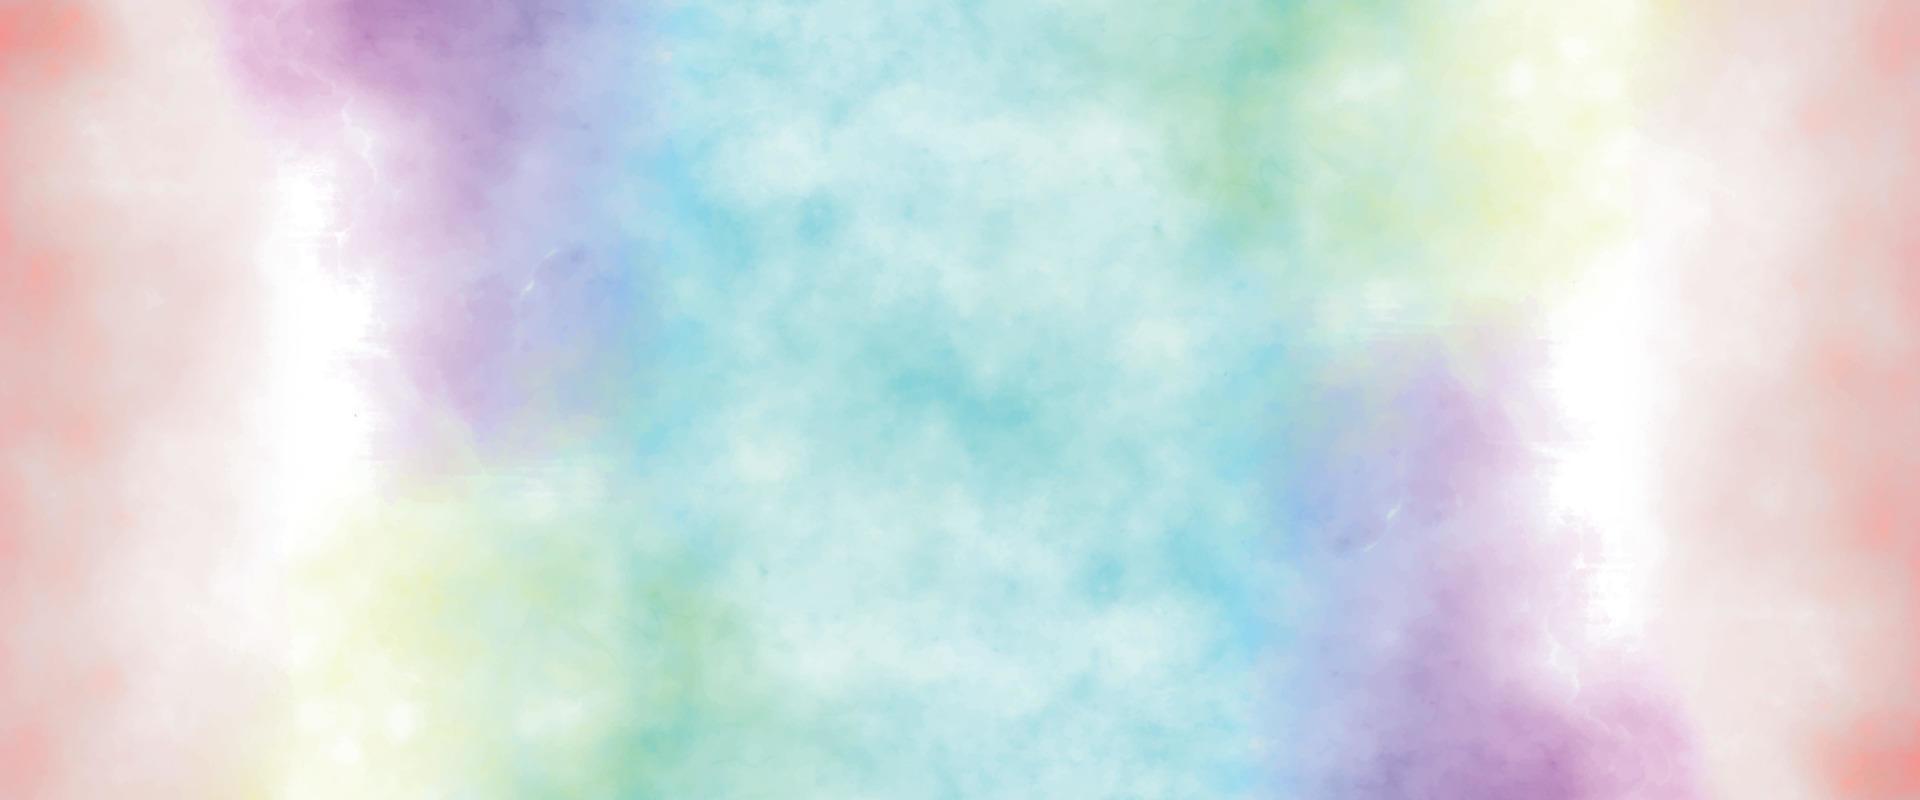 bunte Grunge-Kunstmalerei. Wirkung von Licht heiß gefärbt von Sonnenuntergang Wolken Wolke auf dem Hintergrund des Sonnenuntergangs Himmel. brennender hintergrund. abstrakter Aquarell-Grunge-Hintergrund-Design. vektor